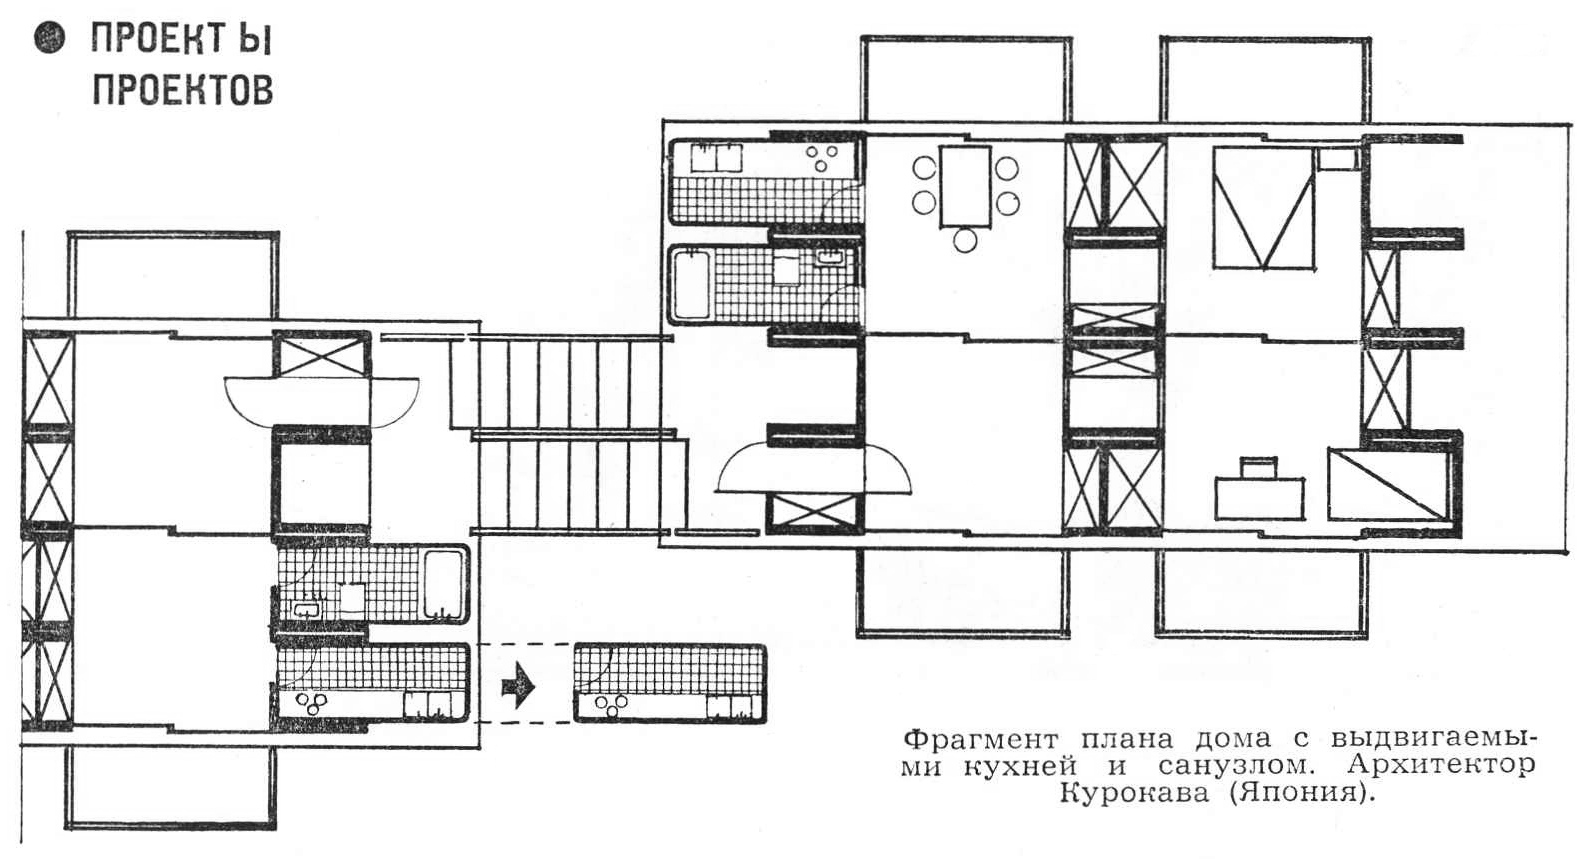 Фрагмент плана дома с выдвигаемыми кухней и санузлом. Архитектор Курокава (Япония).